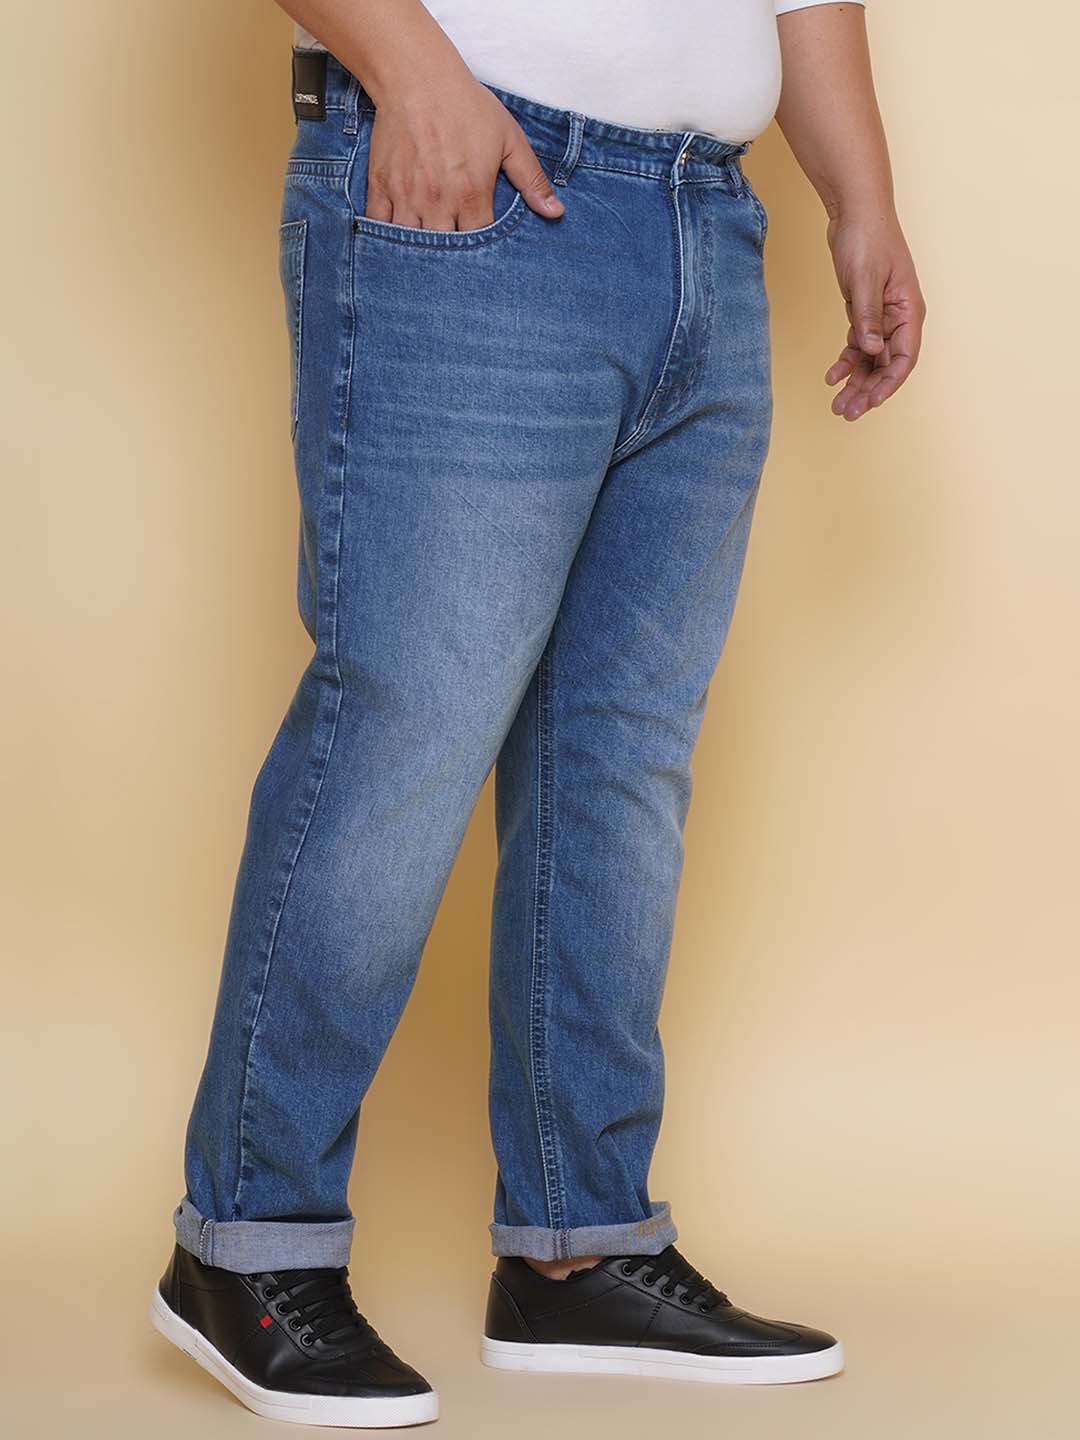 bottomwear/jeans/PJPJ60103/pjpj60103-3.jpg